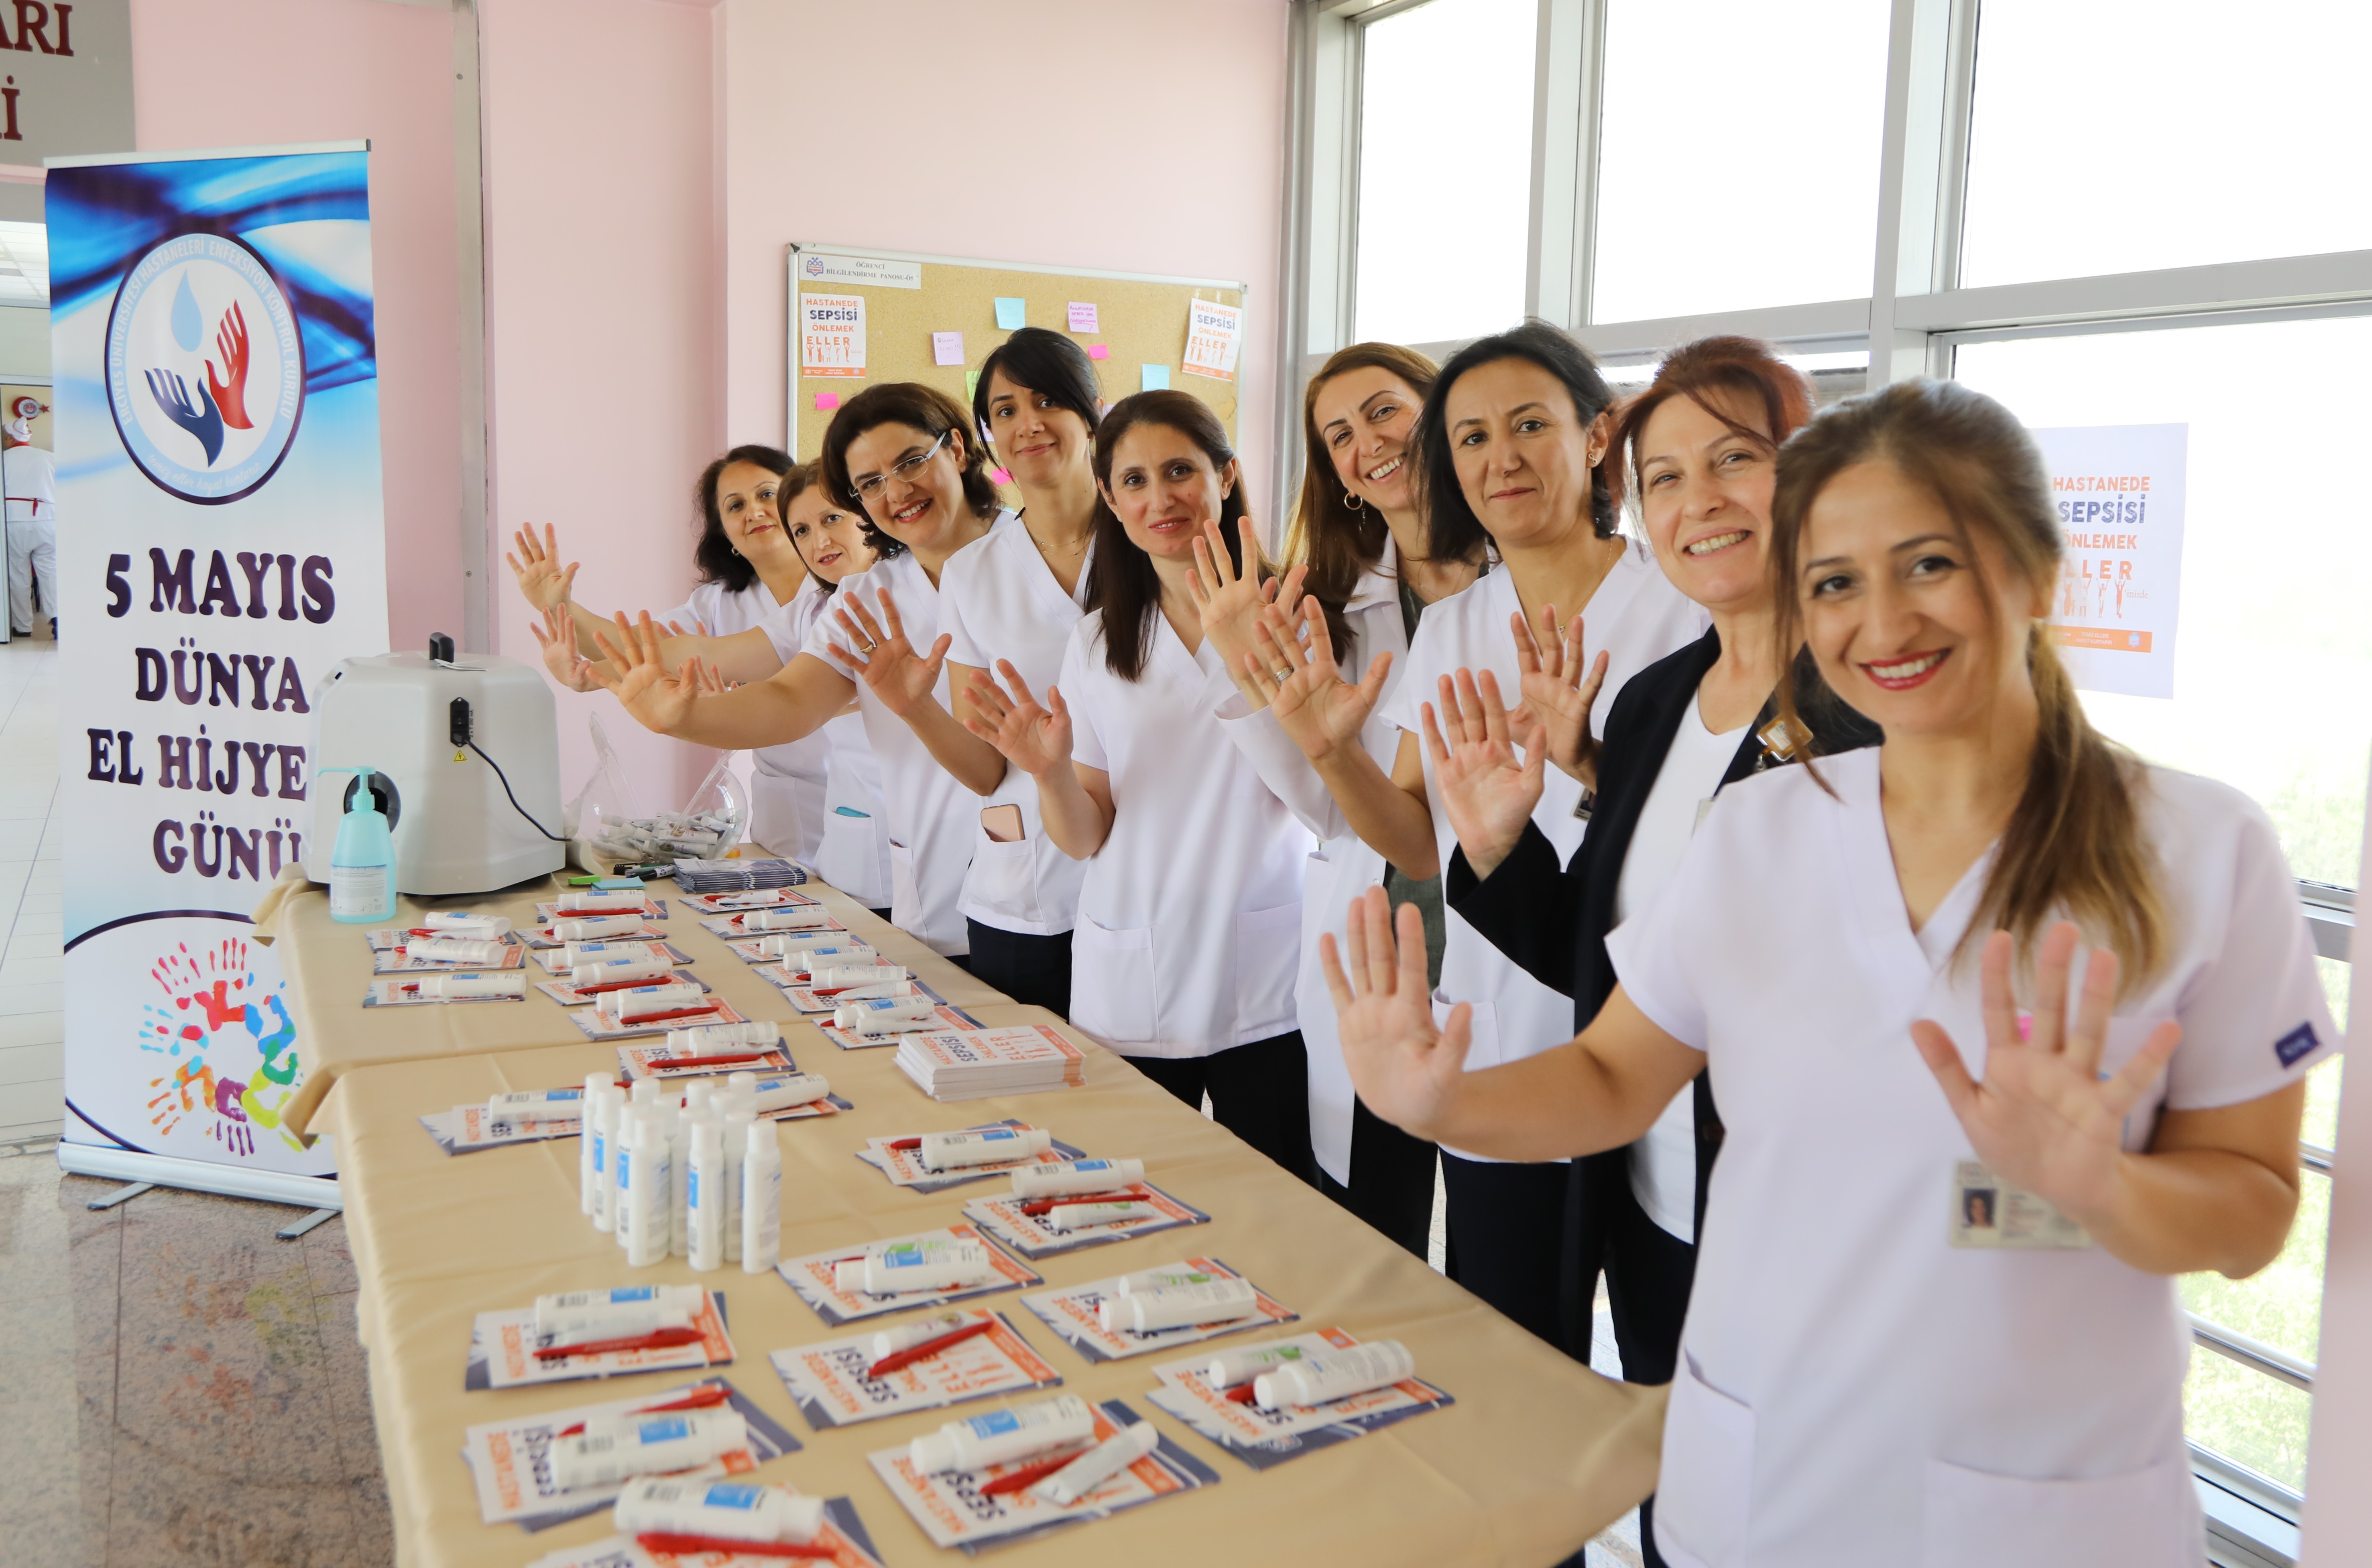 ERÜ Hastaneleri’nde “5 Mayıs Dünya El Hijyeni Günü” Etkinliği Düzenlendi